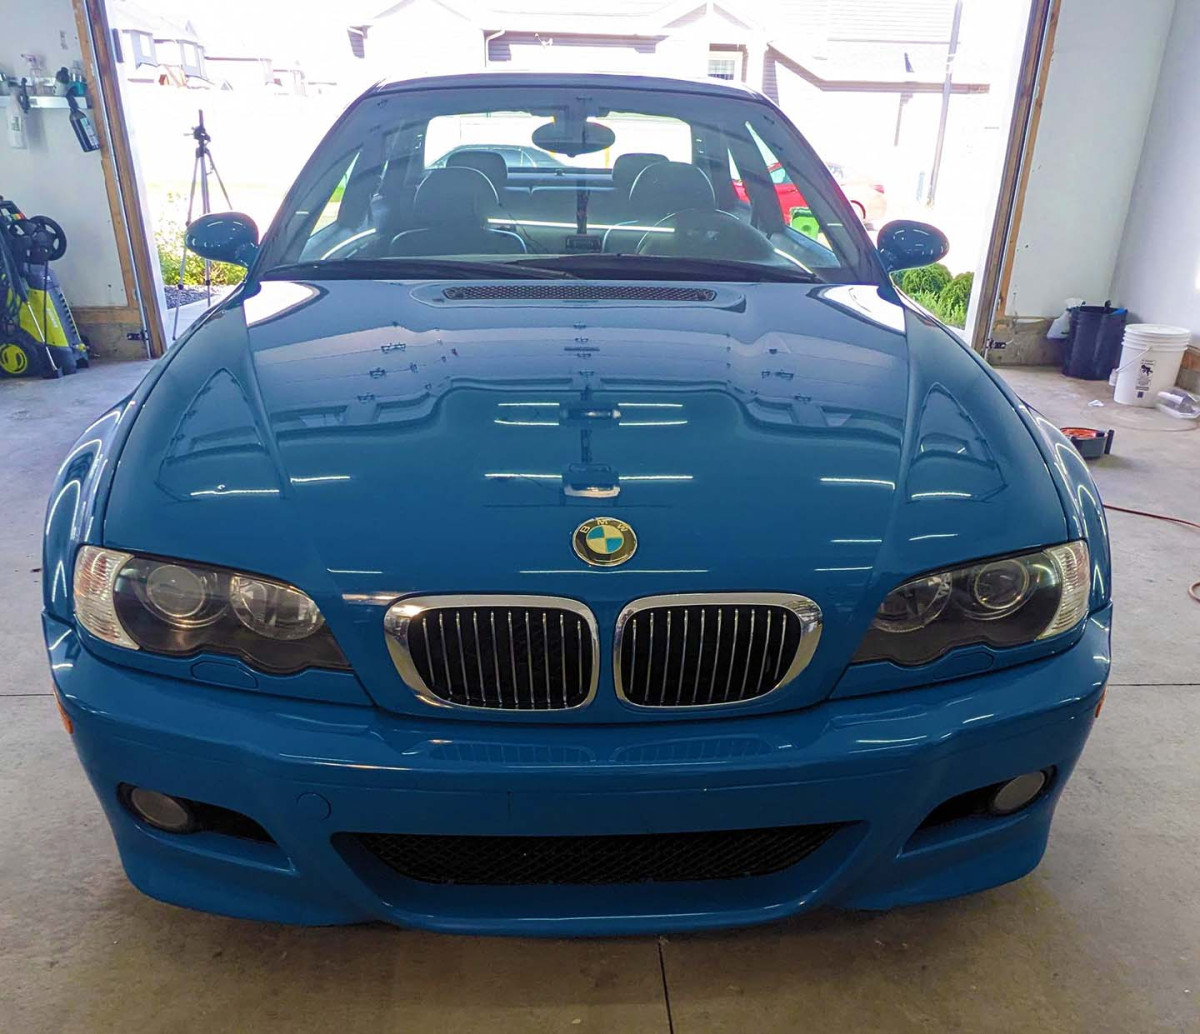 2003 BMW E46 M3 Paint enhancement